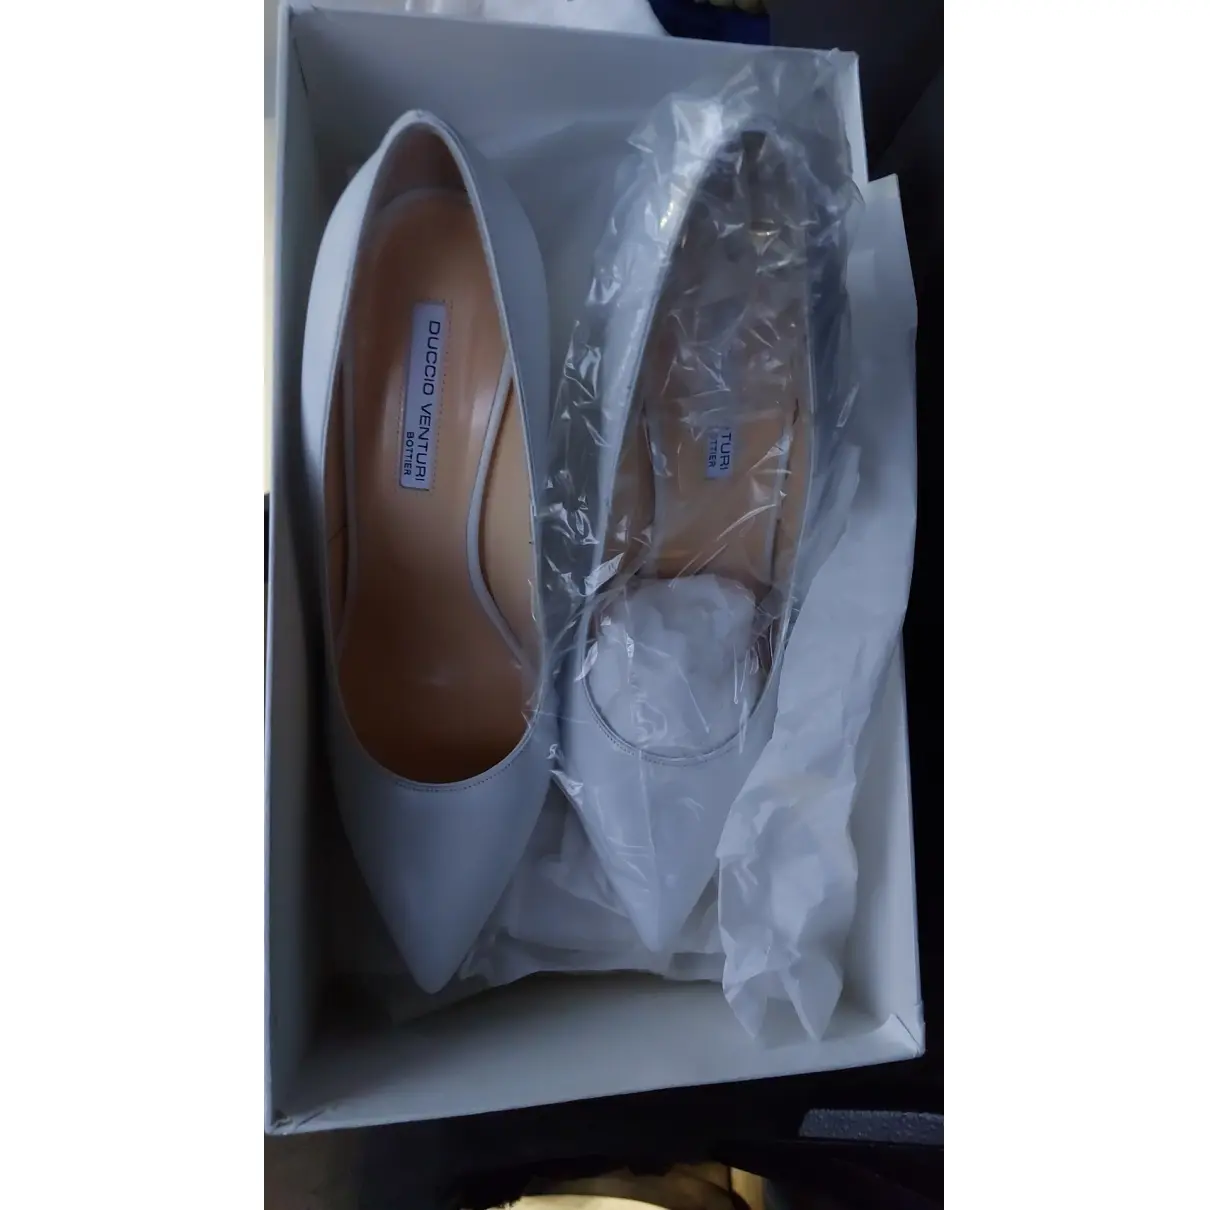 Buy Duccio Venturi Leather heels online